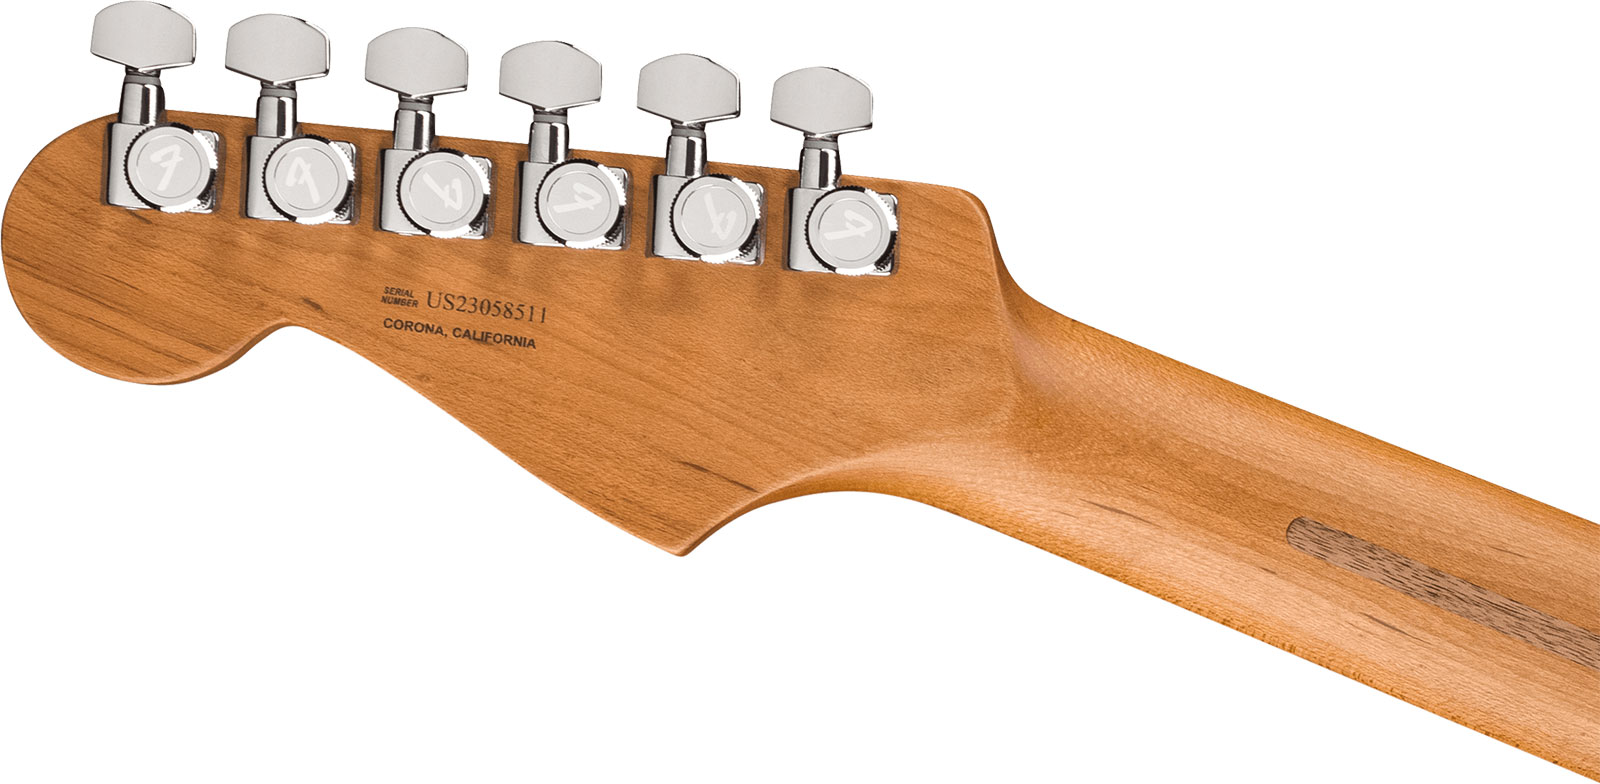 Fender Strat 70th Anniversary American Ultra Ltd Usa Hss Trem Mn - Amethyst - Guitarra eléctrica con forma de str. - Variation 3